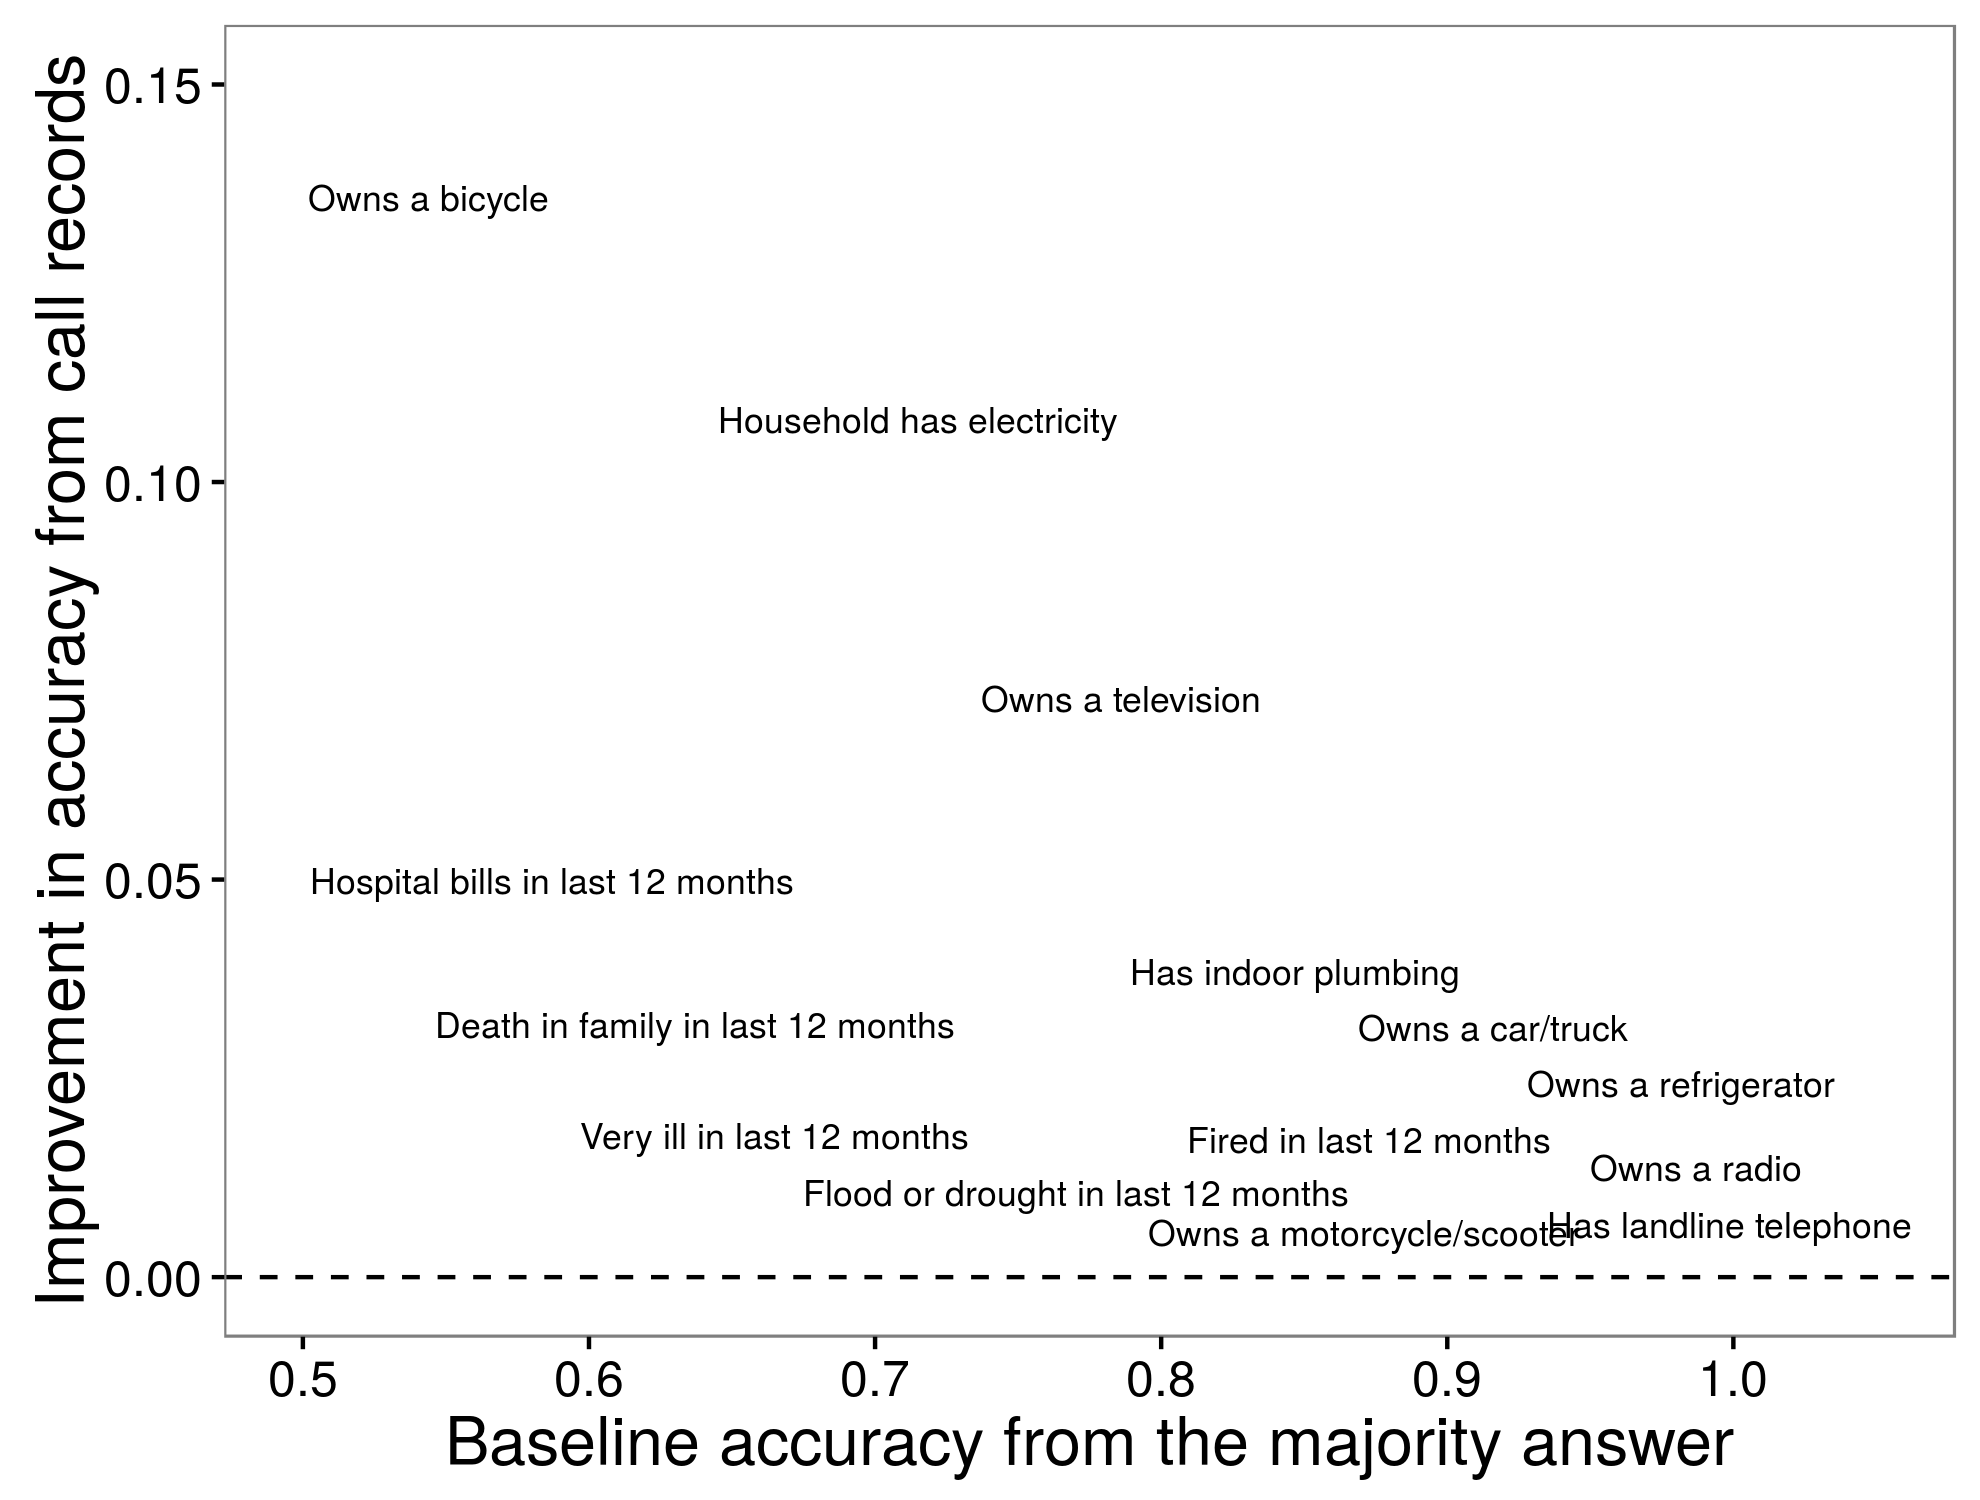 Figura 3.15: Compararea preciziei predictive pentru un model statistic instruit cu înregistrări de apel la predicția simplă a liniei de bază. Punctele sunt ușor jignite pentru a evita suprapunerea. Adaptat de la Blumenstock (2014), tabelul 2.